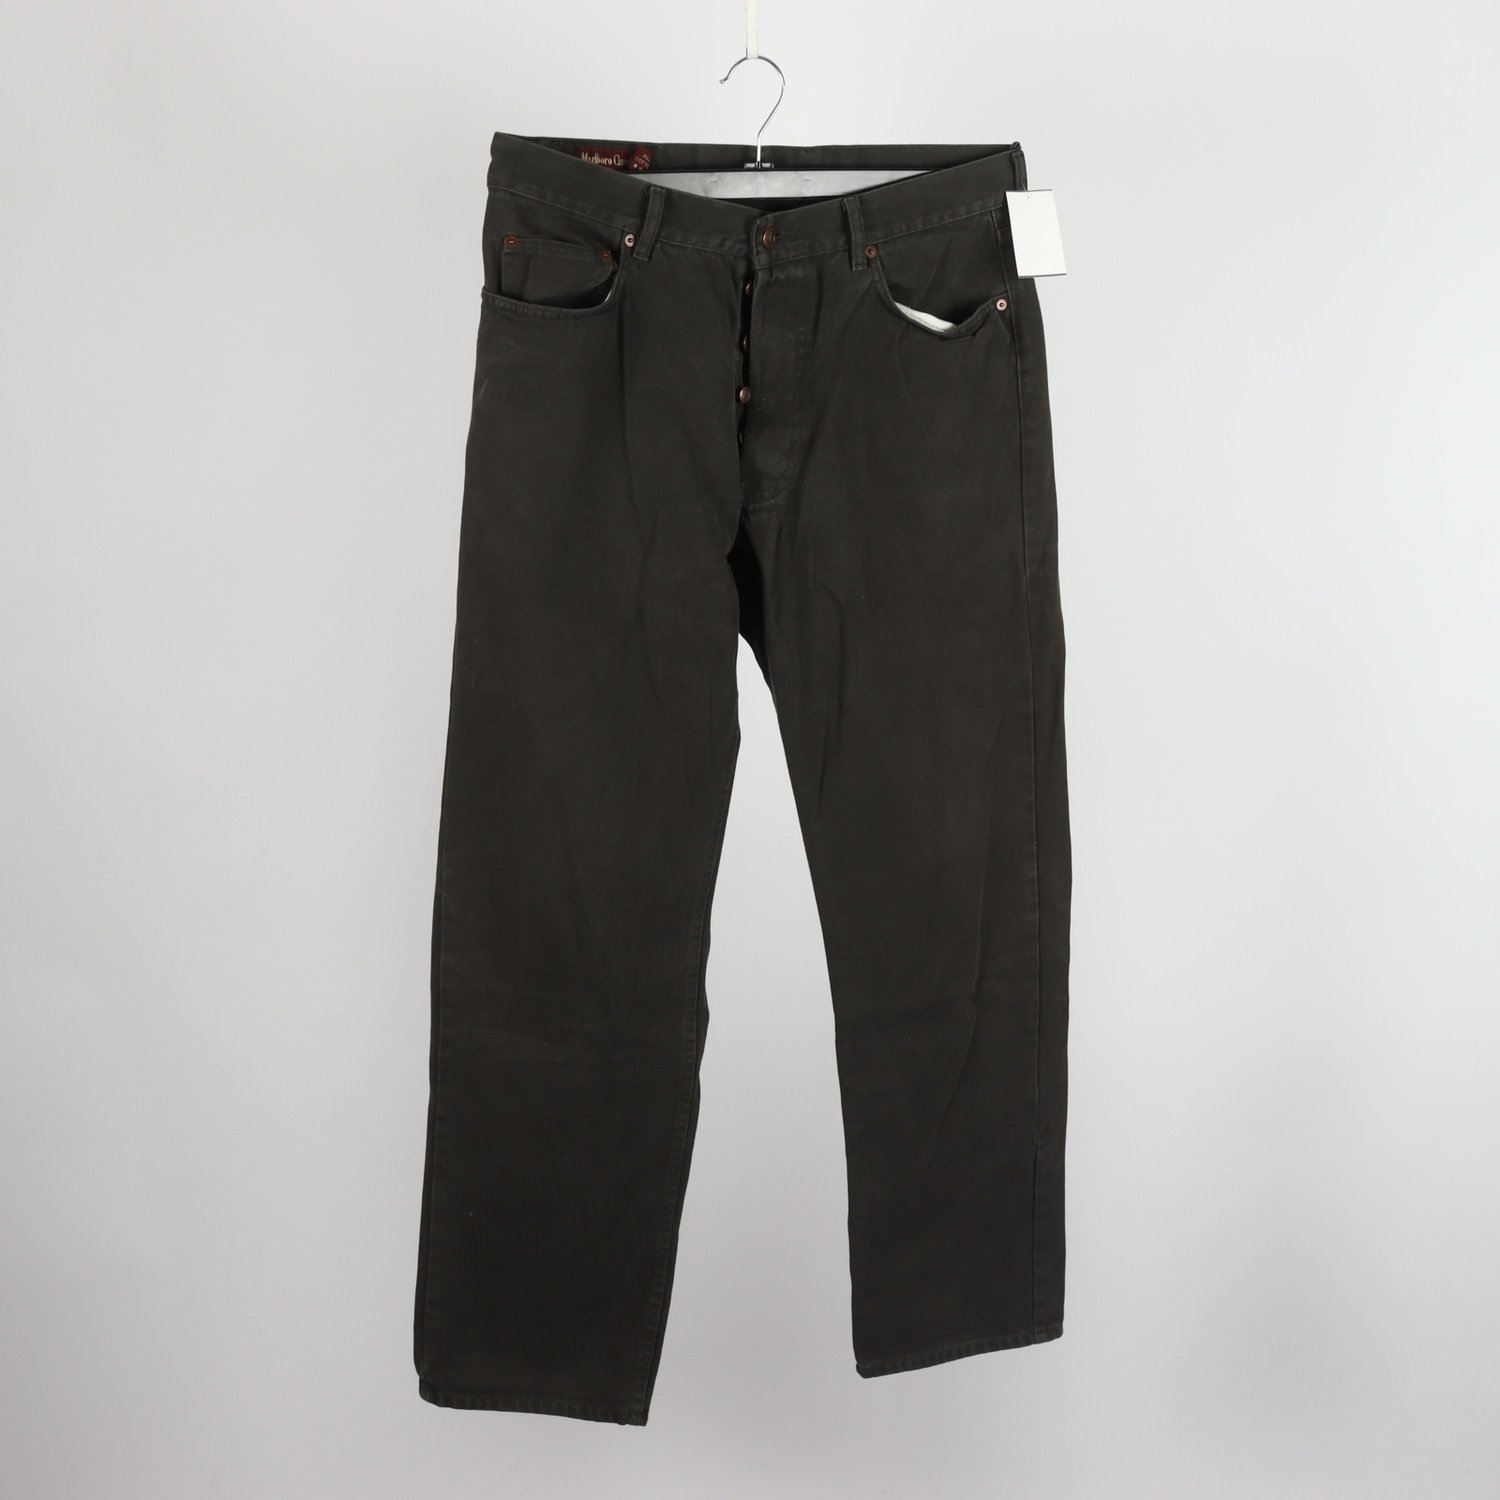 Jeans Marlboro Classics, w36/L32